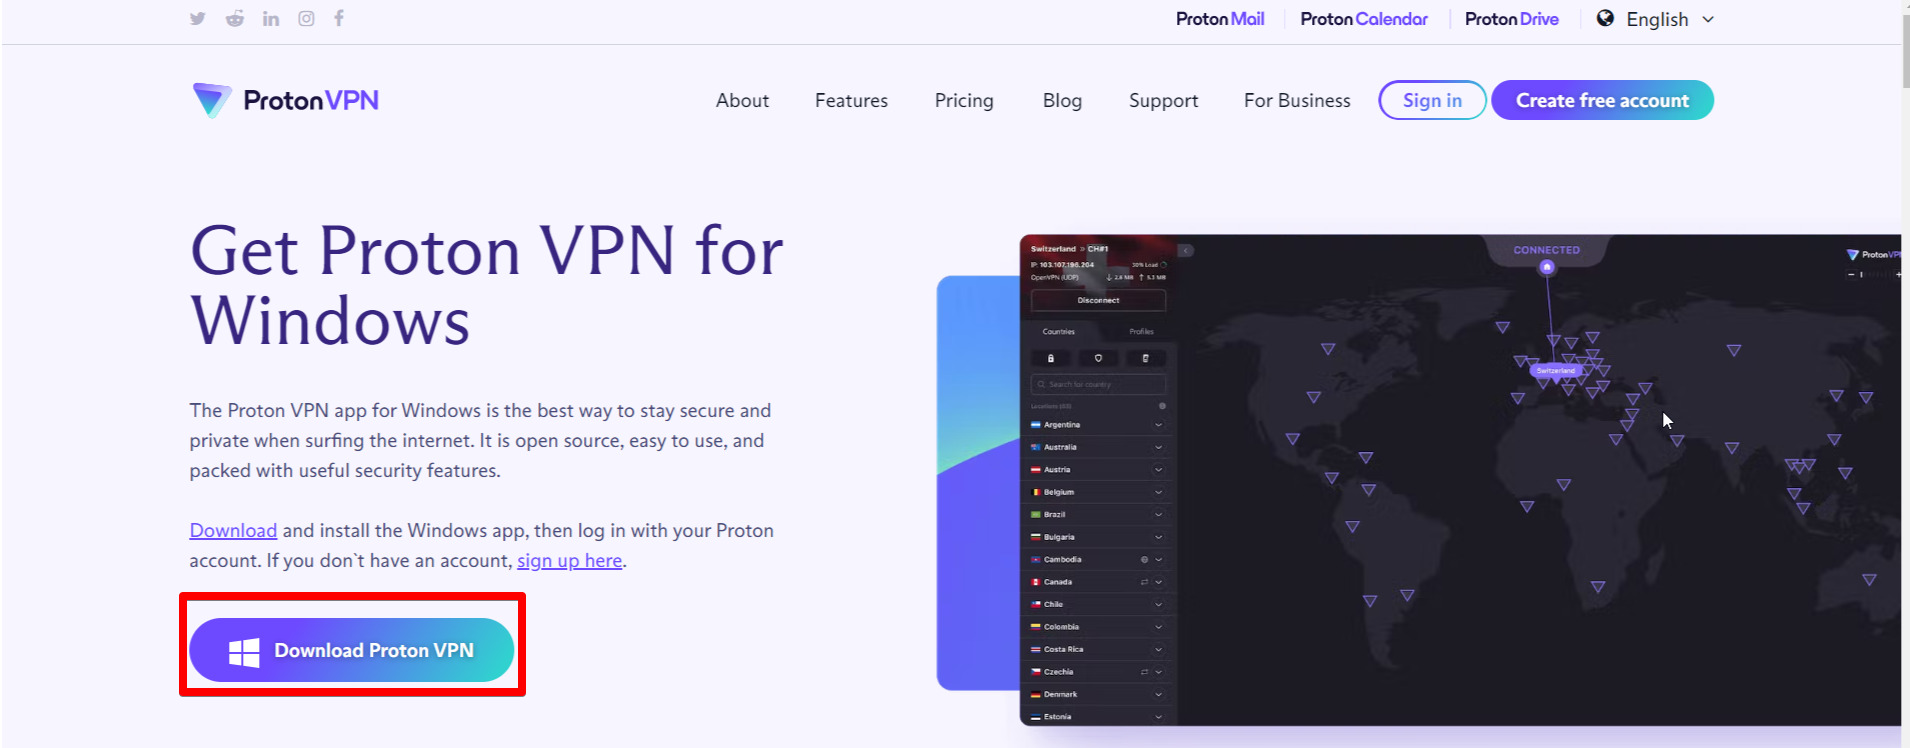 Proton-VPN-download-in-France